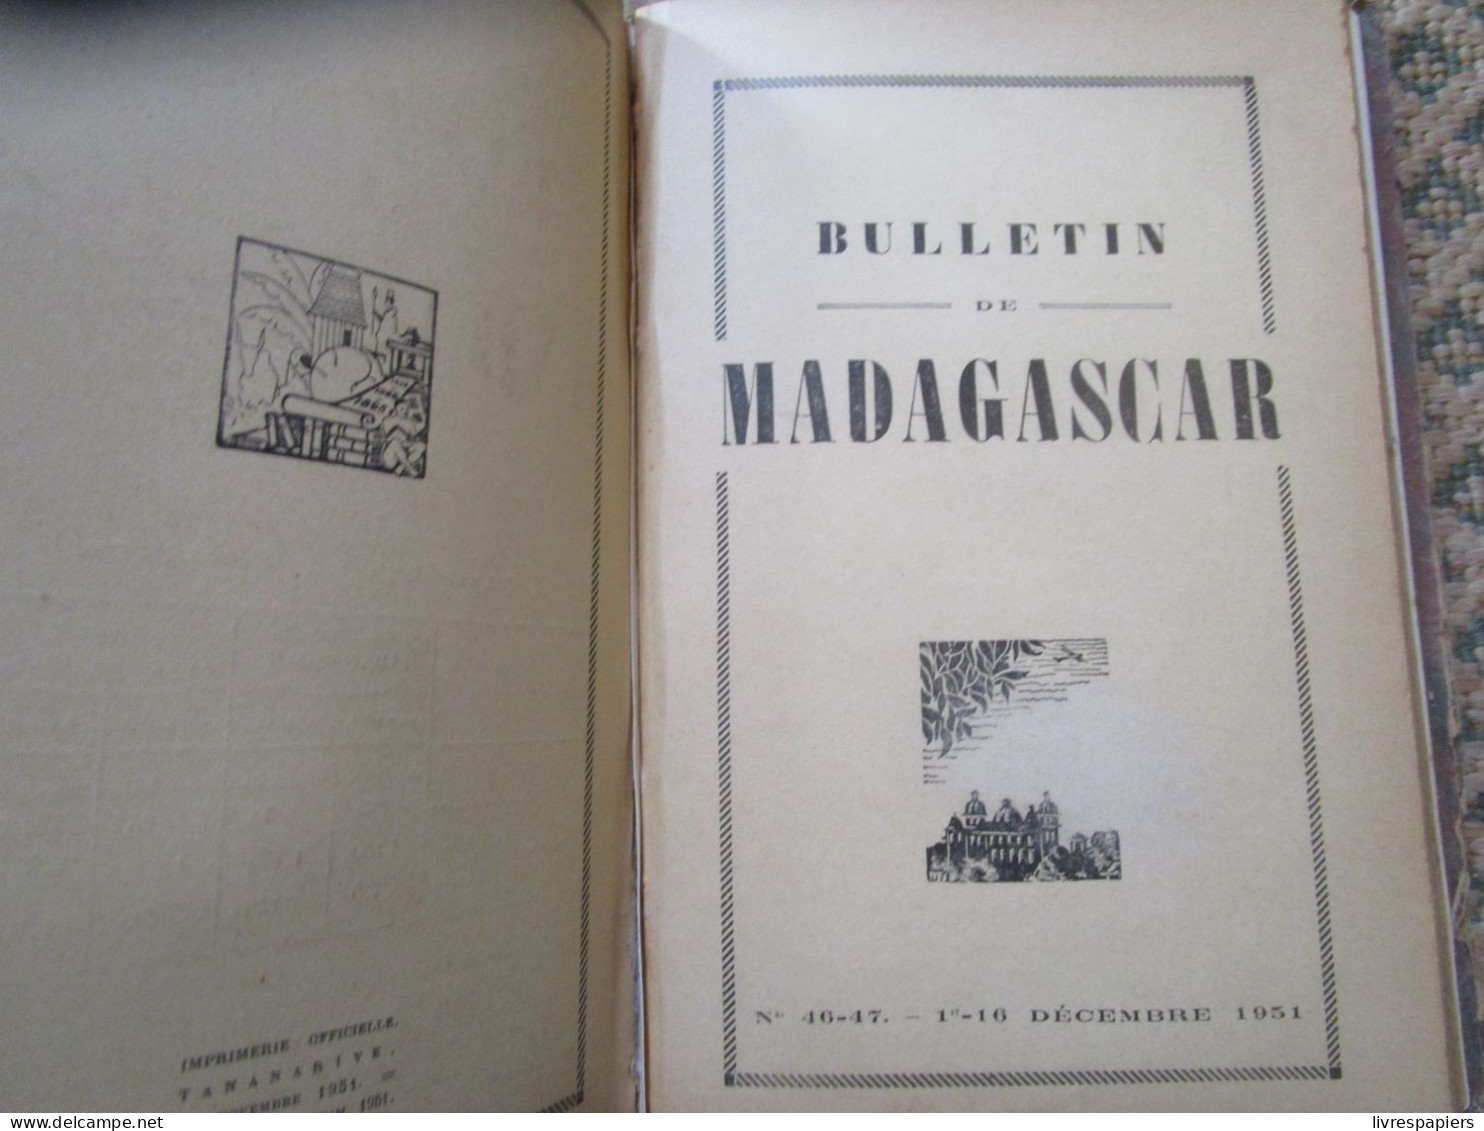 Madagascar BULLETIN DE MADAGASCAR 1951 Complet Janv à Dec , Relier Couvertures Conservées - Geschichte